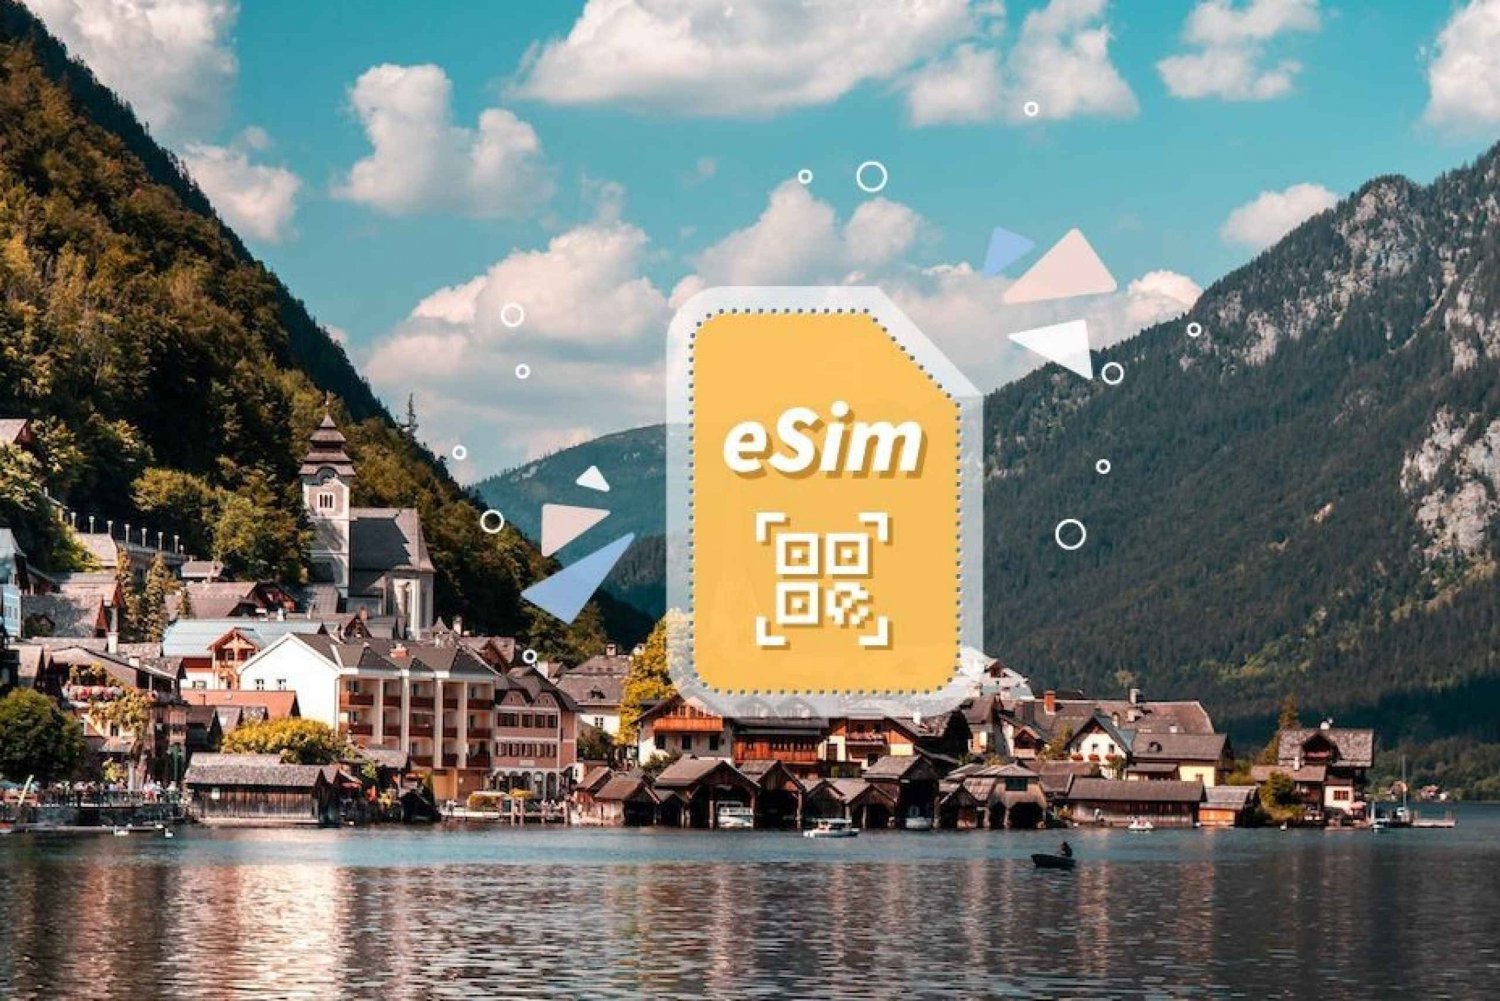 Oostenrijk/Europa: 5G eSim mobiel data-abonnement